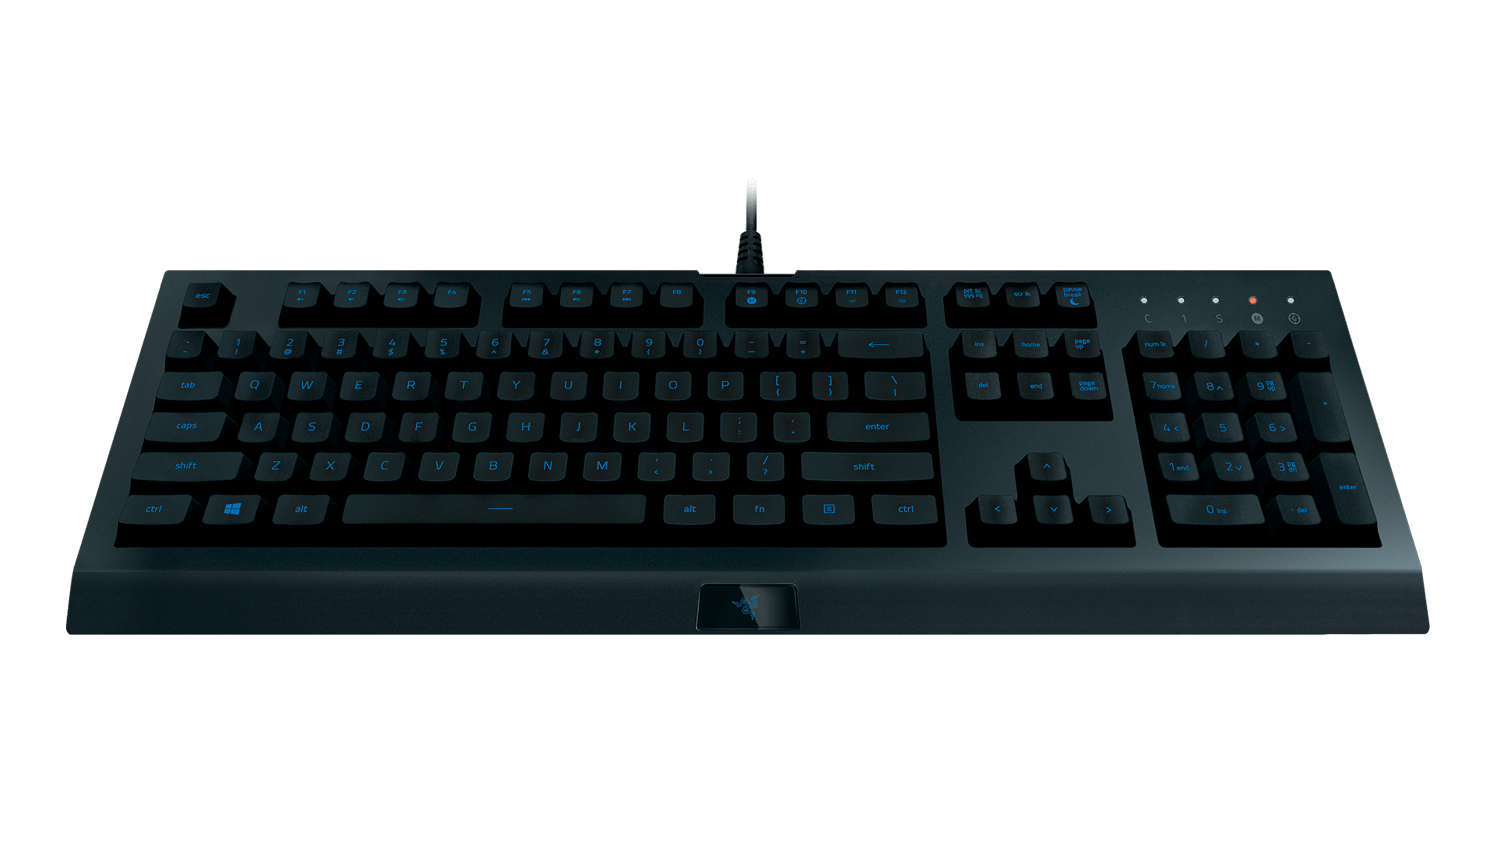 Razer Cynosa Купить на Lite - игровую клавиатуру